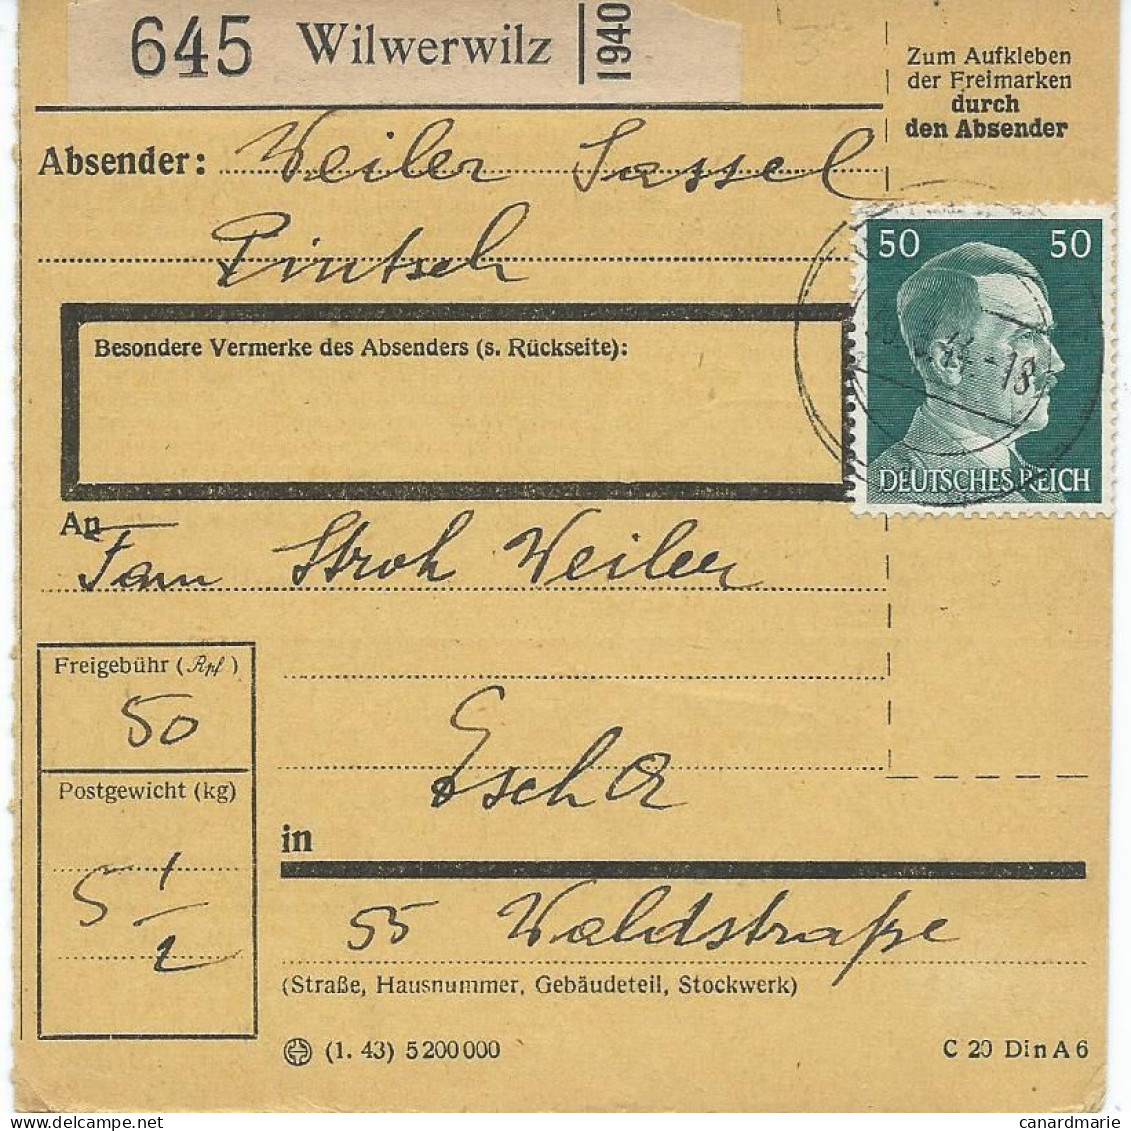 BULLETIN DE COLIS POSTAL 1944 AVEC ETIQUETTE DE WILWERWILZ - 1940-1944 Duitse Bezetting